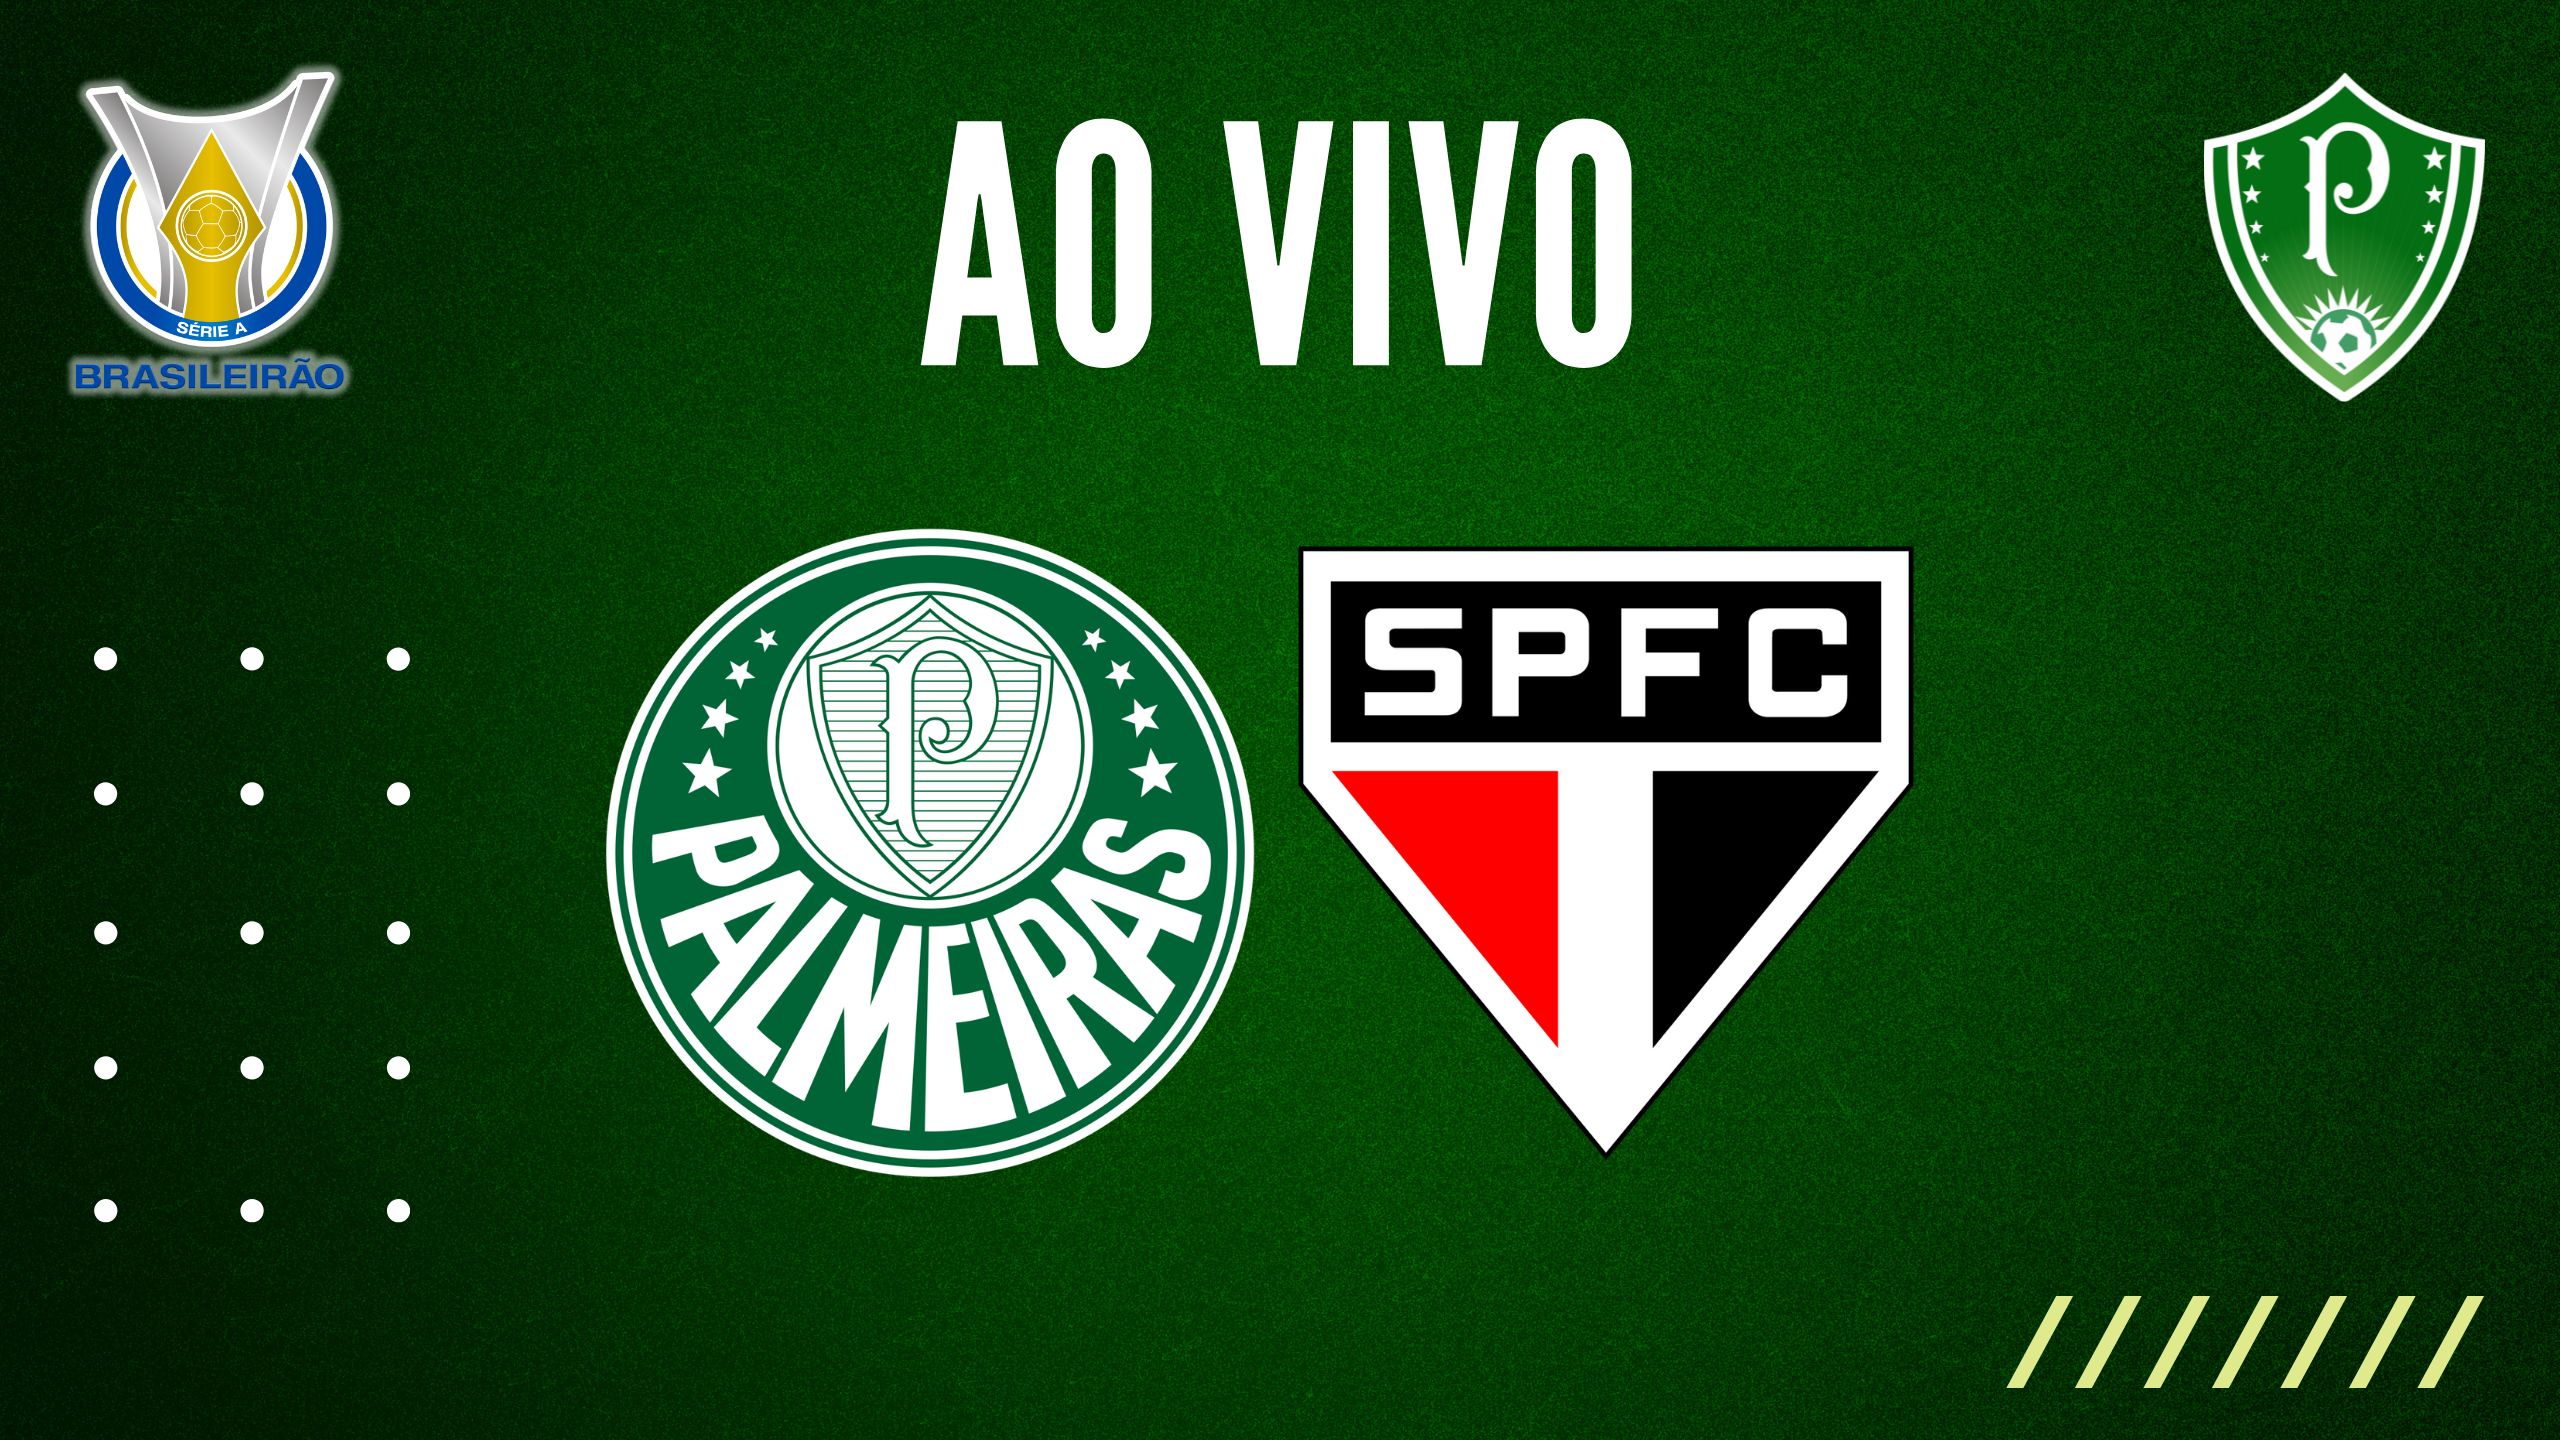 Onde assistir ao vivo o jogo Palmeiras x São Paulo hoje, domingo, 16; veja  horário